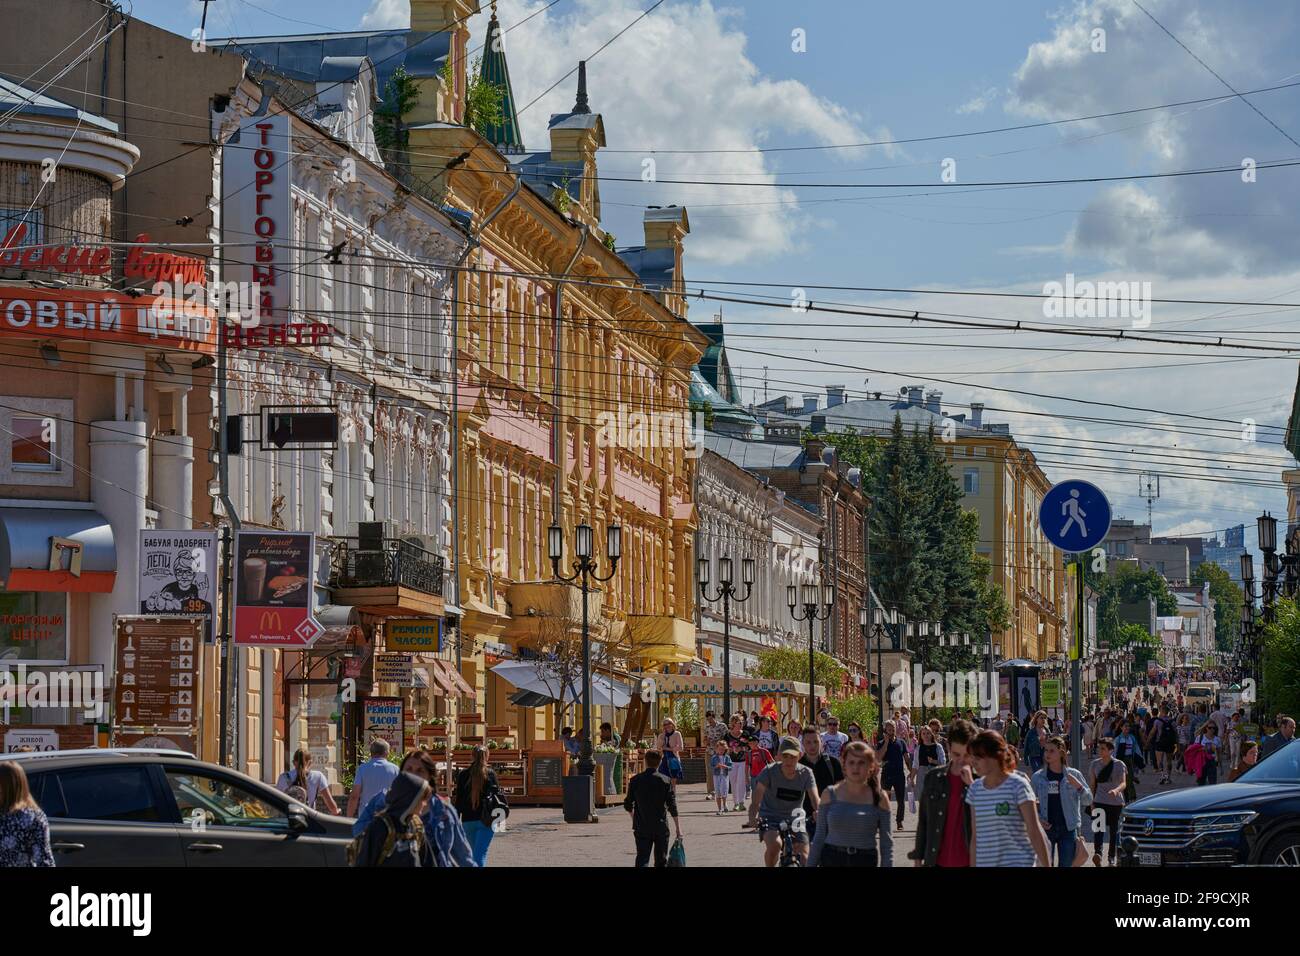 Vista de la calle Bolshaya Pokrovskaya, la calle principal en el corazón de Nizhny Novgorod que cuenta con muchos edificios históricos del siglo 19th Foto de stock